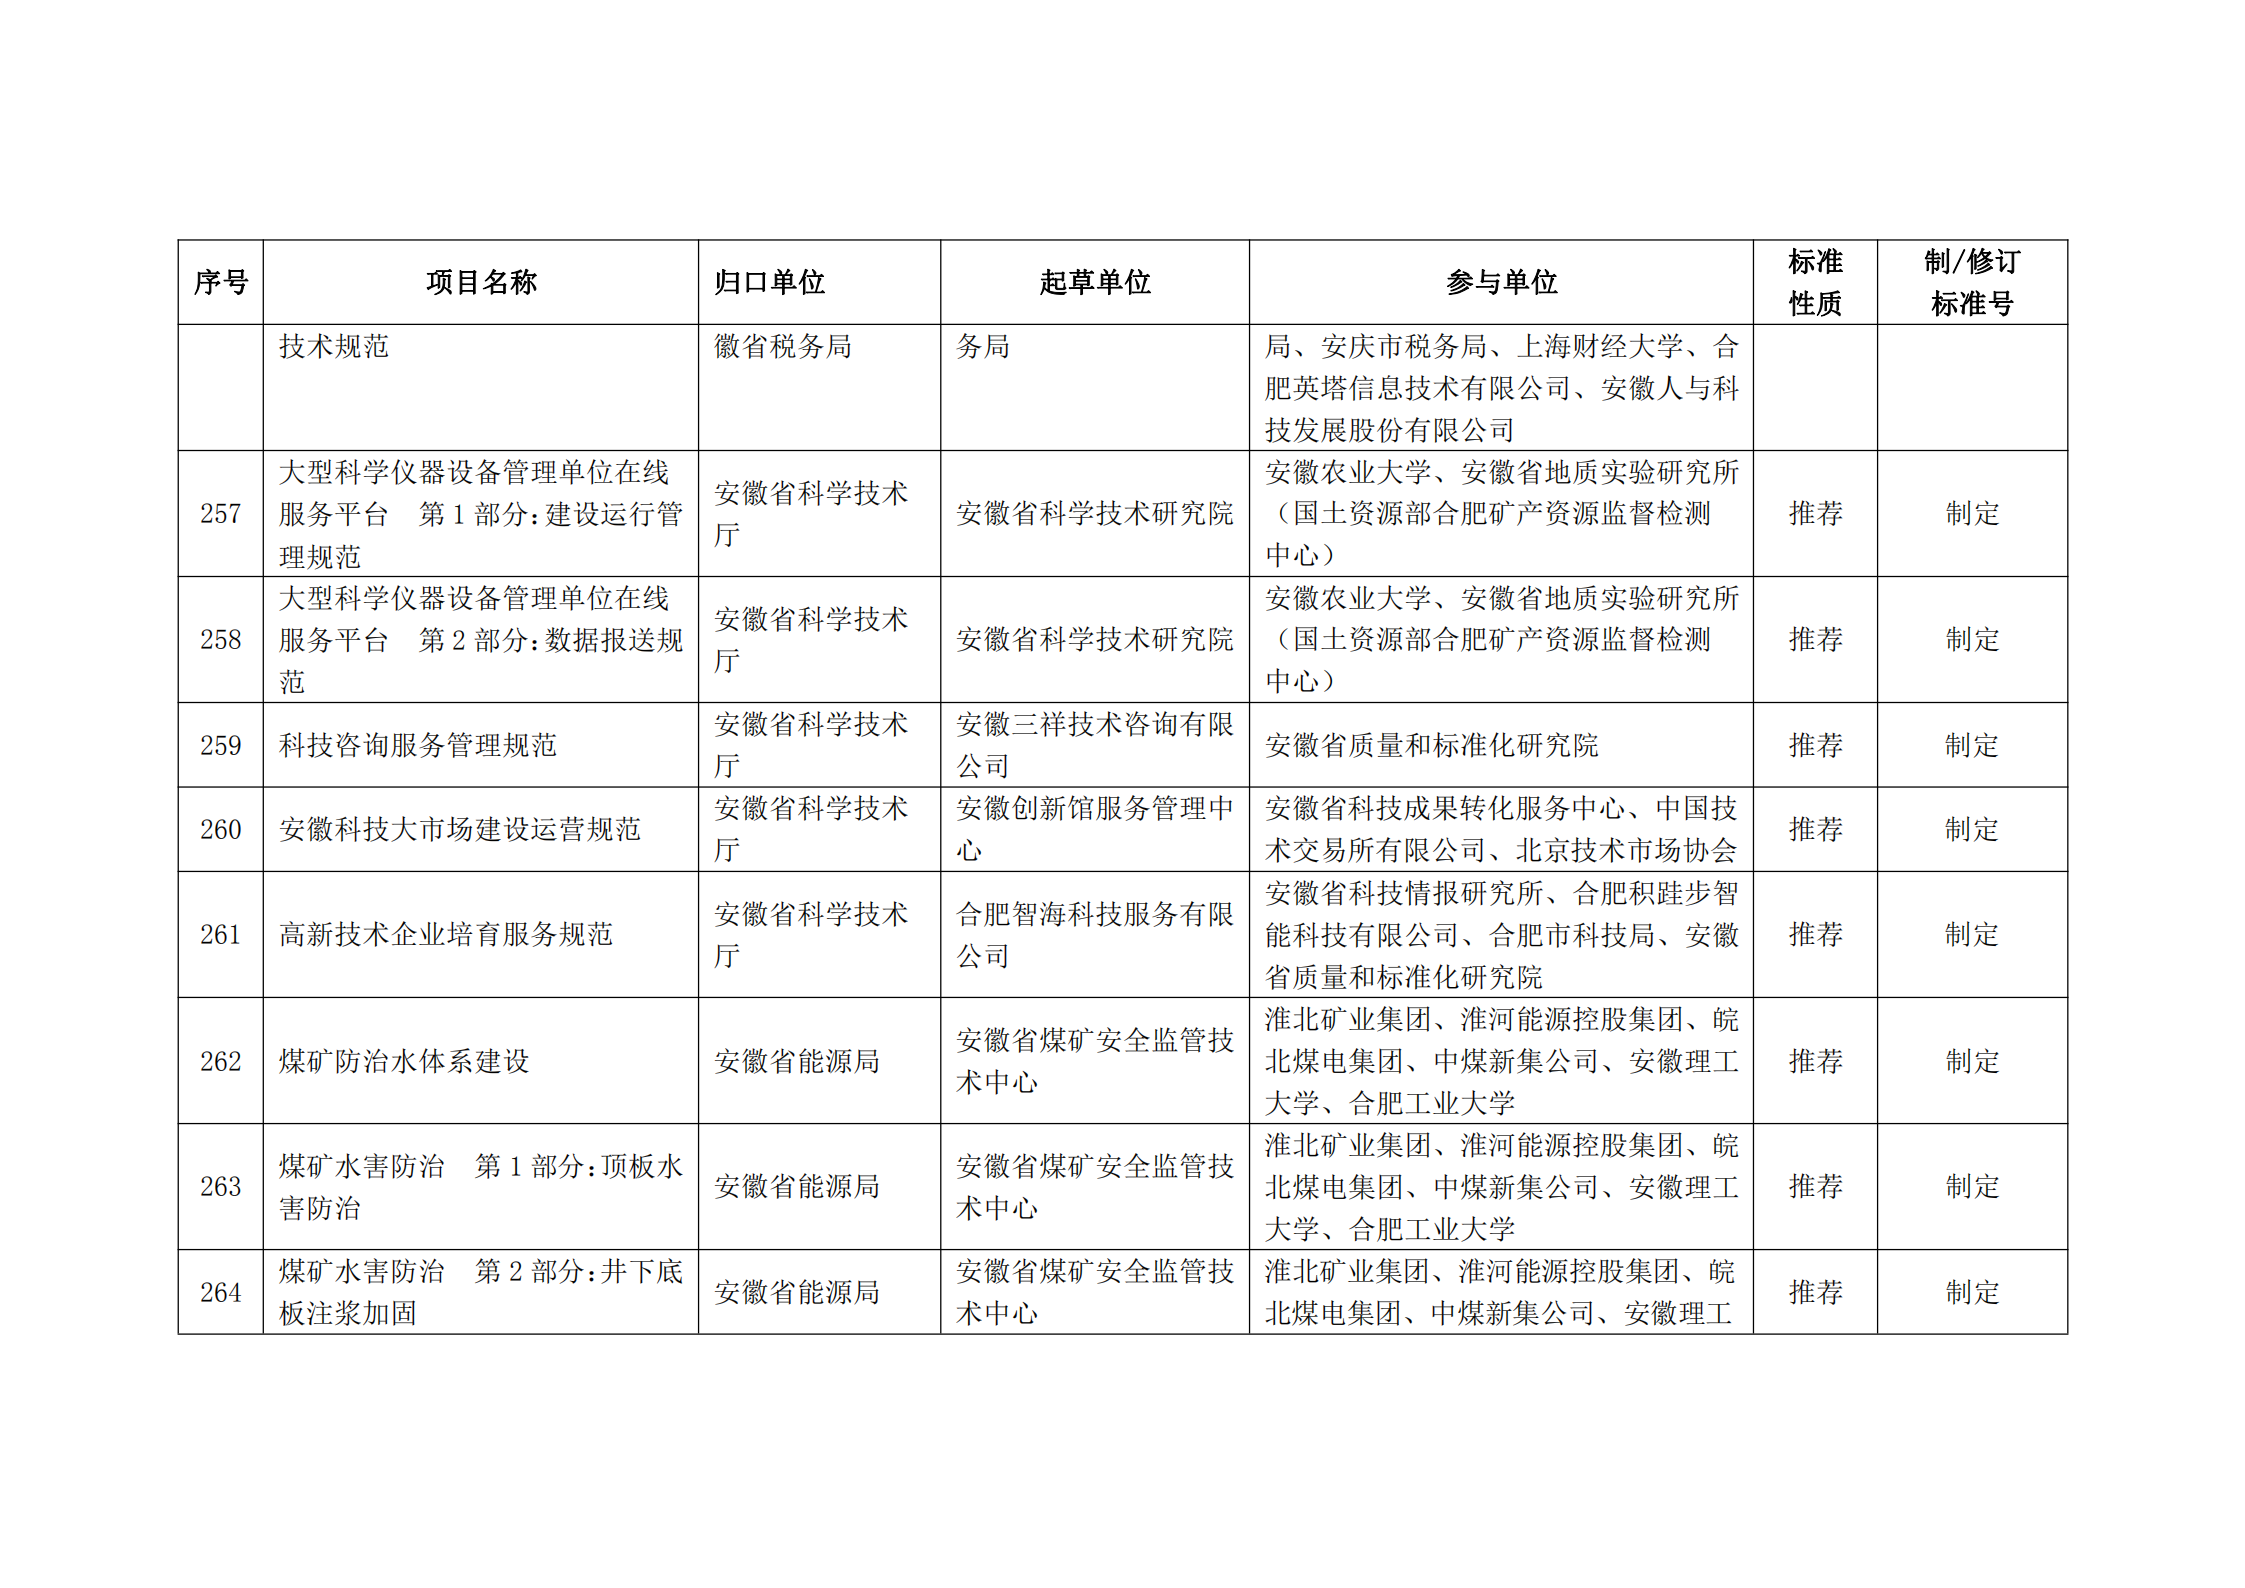 2020 年第二批安徽省地方标准制、修订计划项目汇总表(图29)